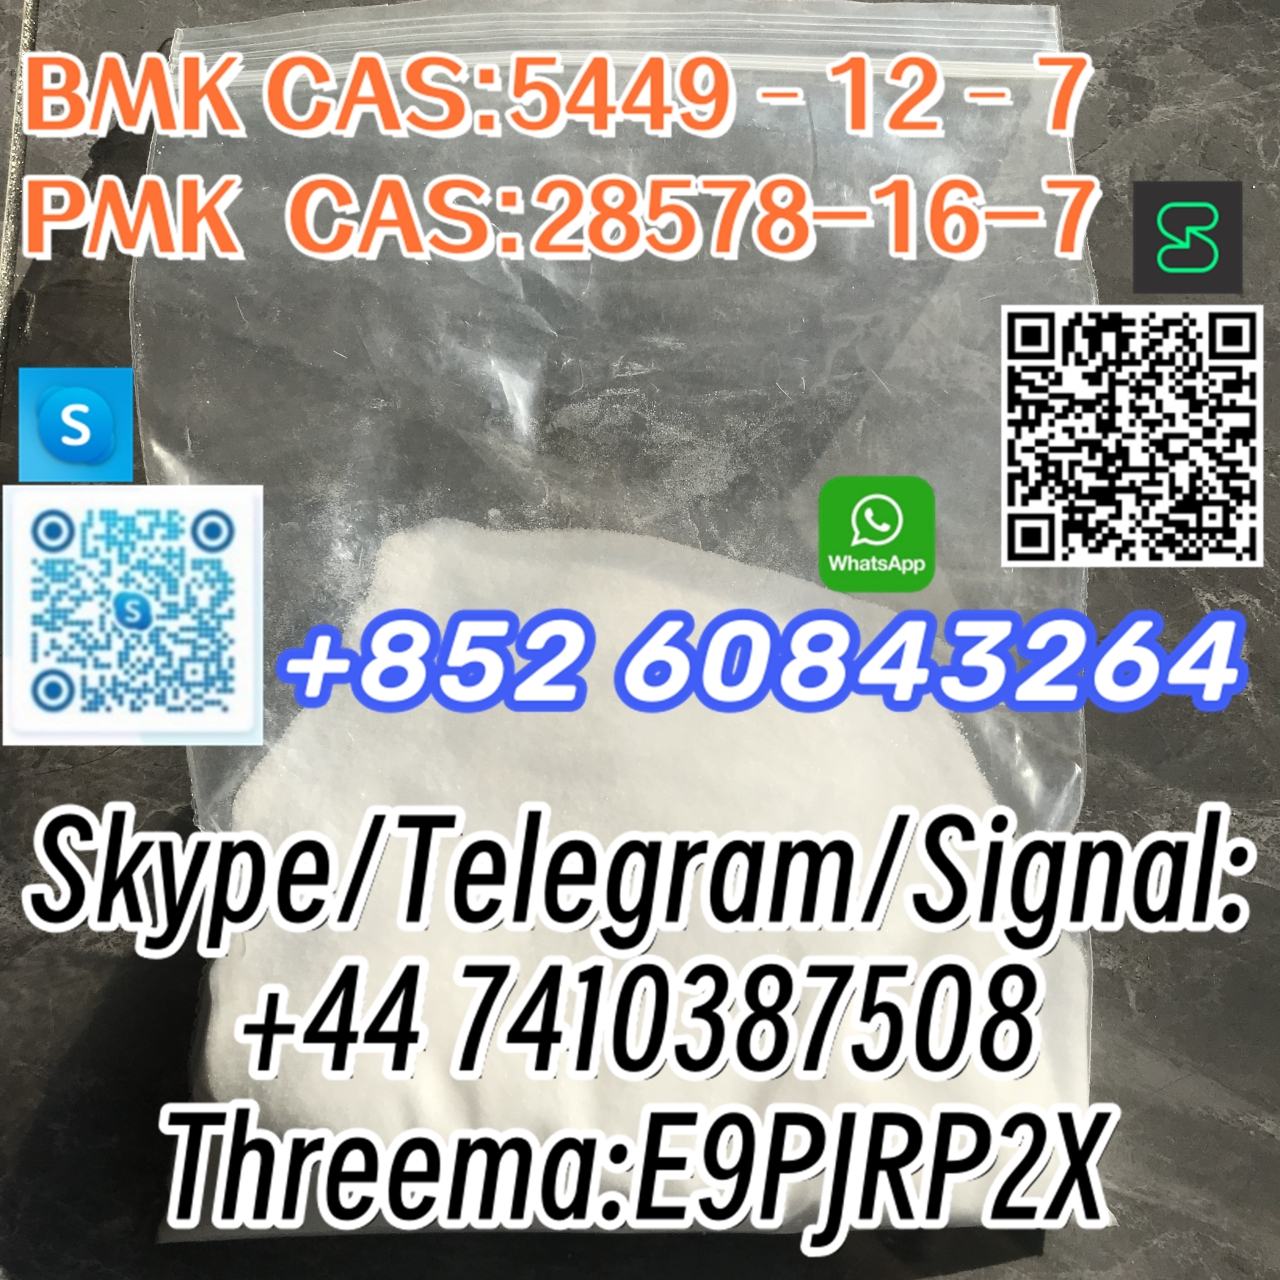 BMK CAS:5449–12–7 PMK CAS:28578-16-7 Skype/Telegram/Signal: +44 7410387508 Threema:E9PJRP2X-1 24.04.2024 - BMK CAS:5449–12–7 PMK  CAS:28578-16-7  Skype/Telegram/Signal:
+44 7410387508
Threema:E9PJRP2X